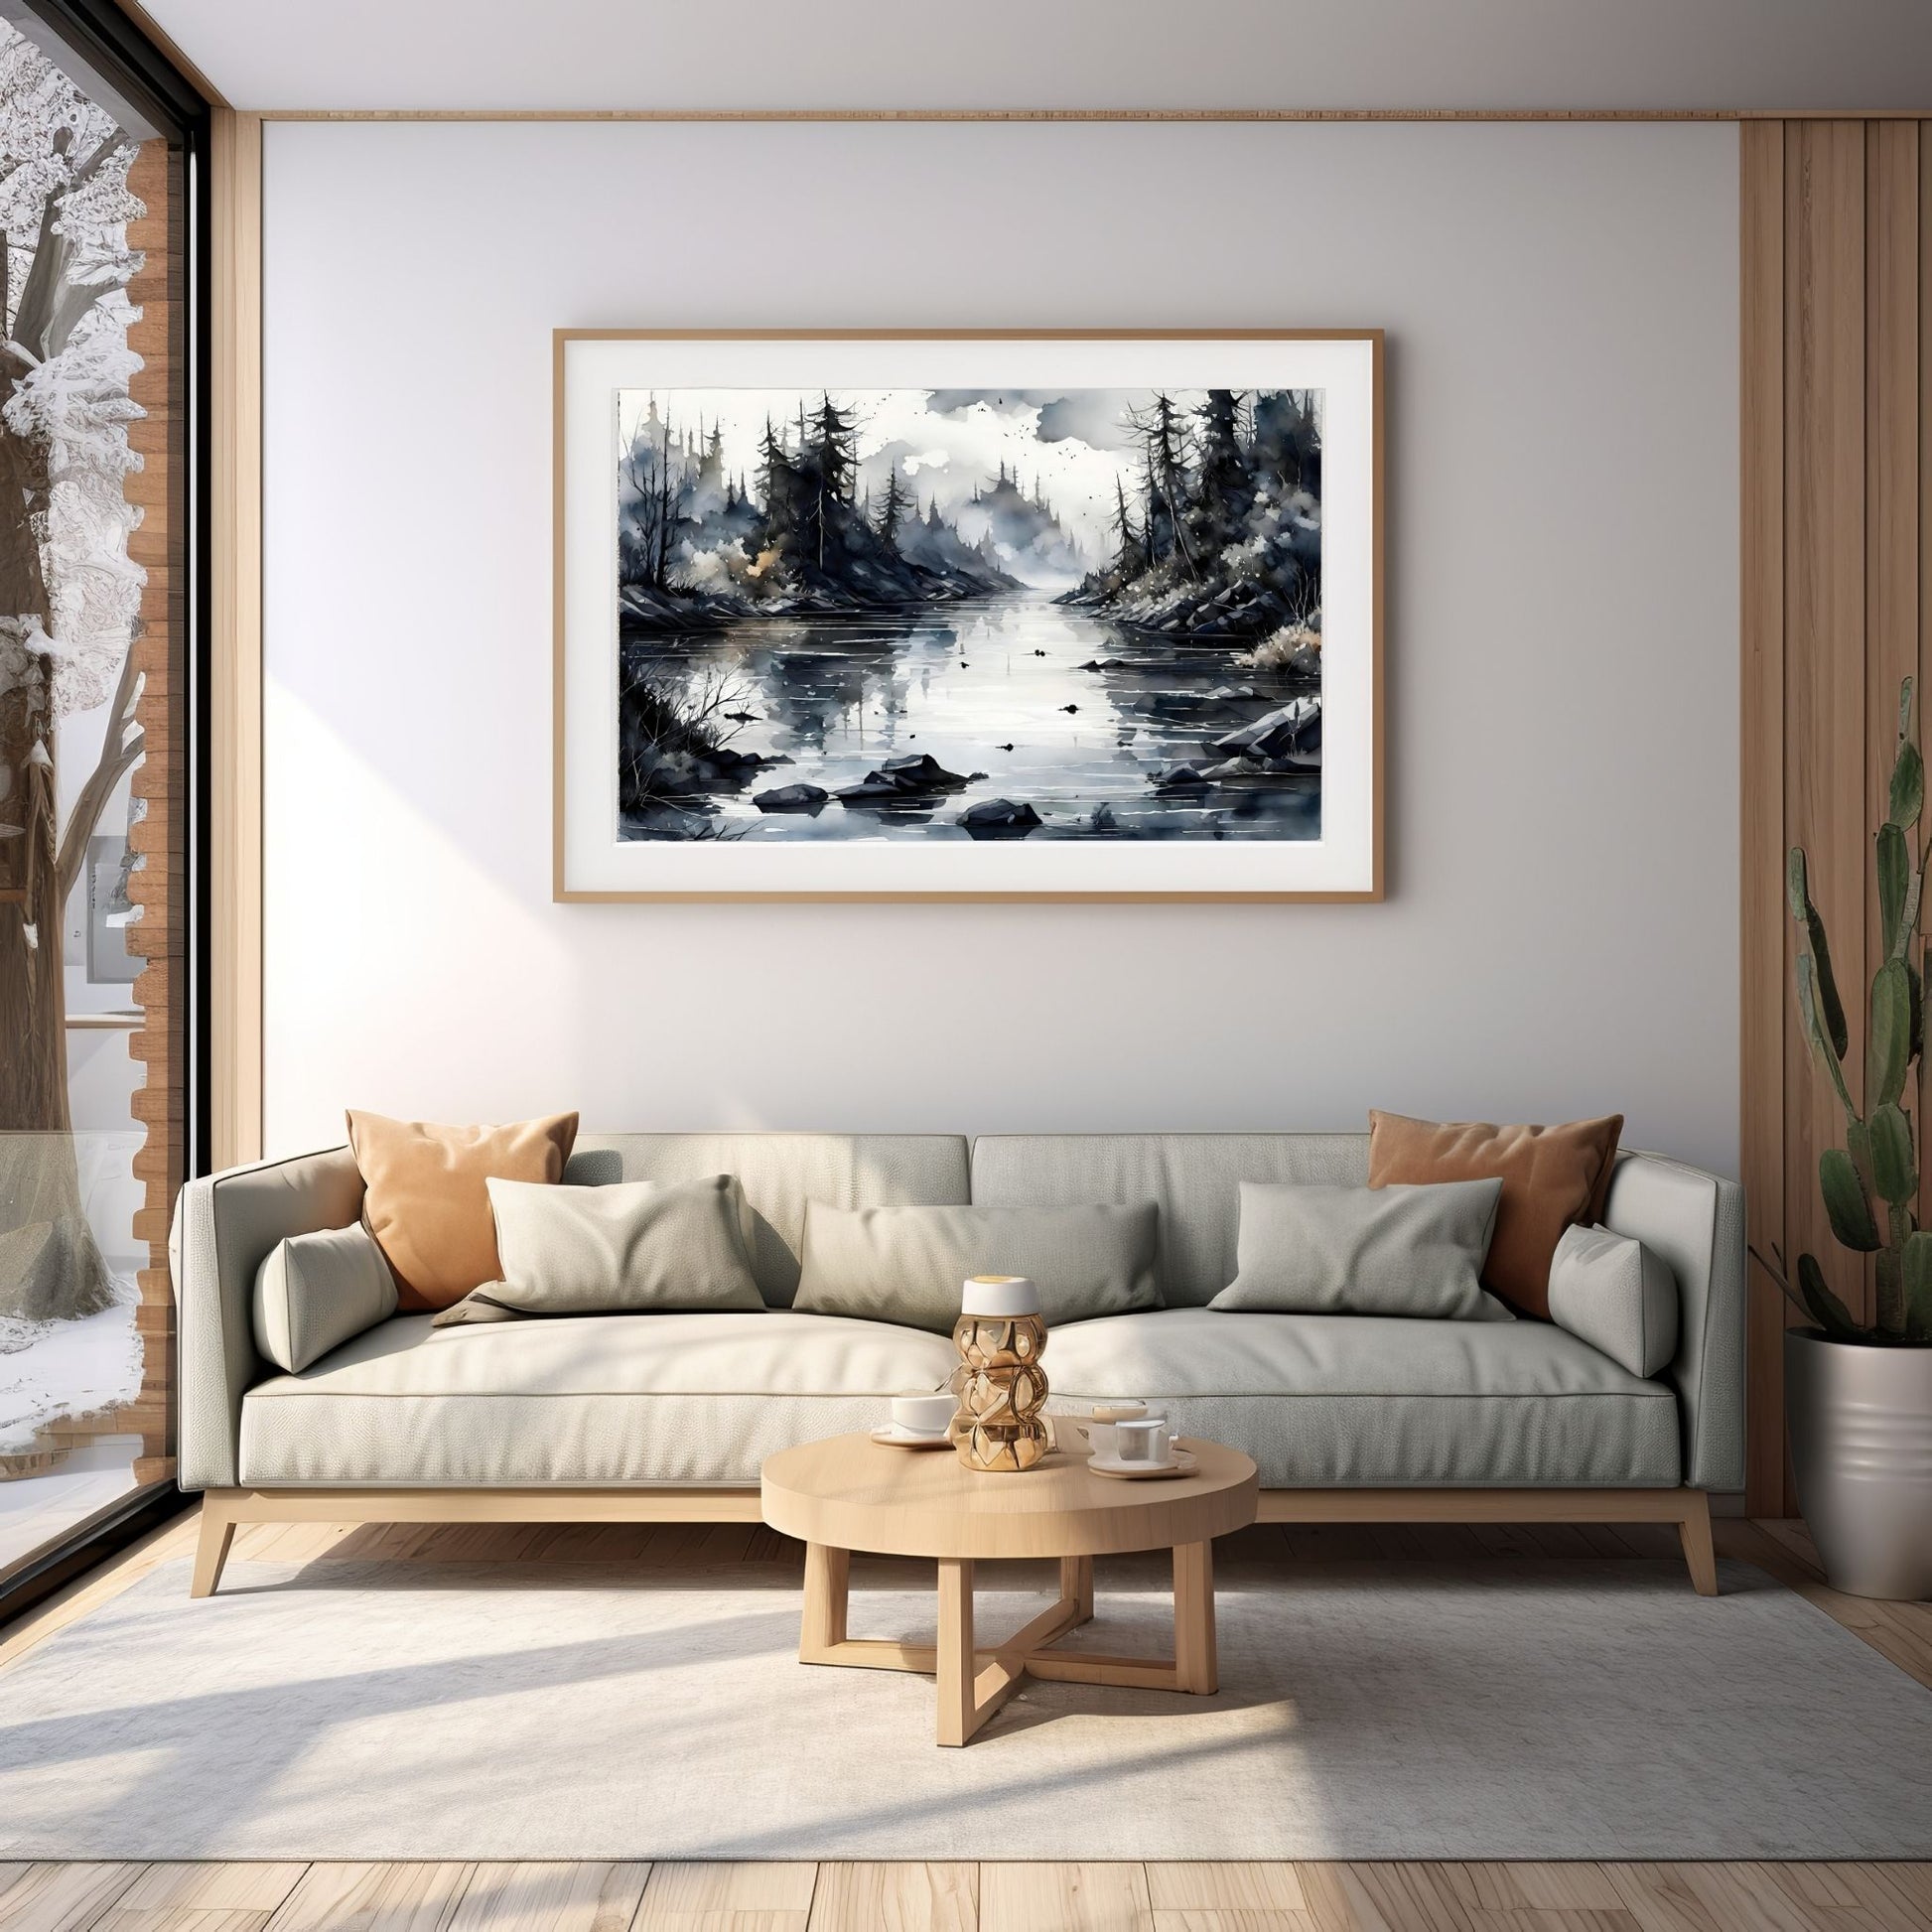 Digitalt kunstmaleri i akvarell som fanger essensen av vinterscenene med et sjarmerende landskap der snøfnugg danser i luften. Illustrasjonsfoto som viser motivet som plakat i ramme som henger over en sofa.